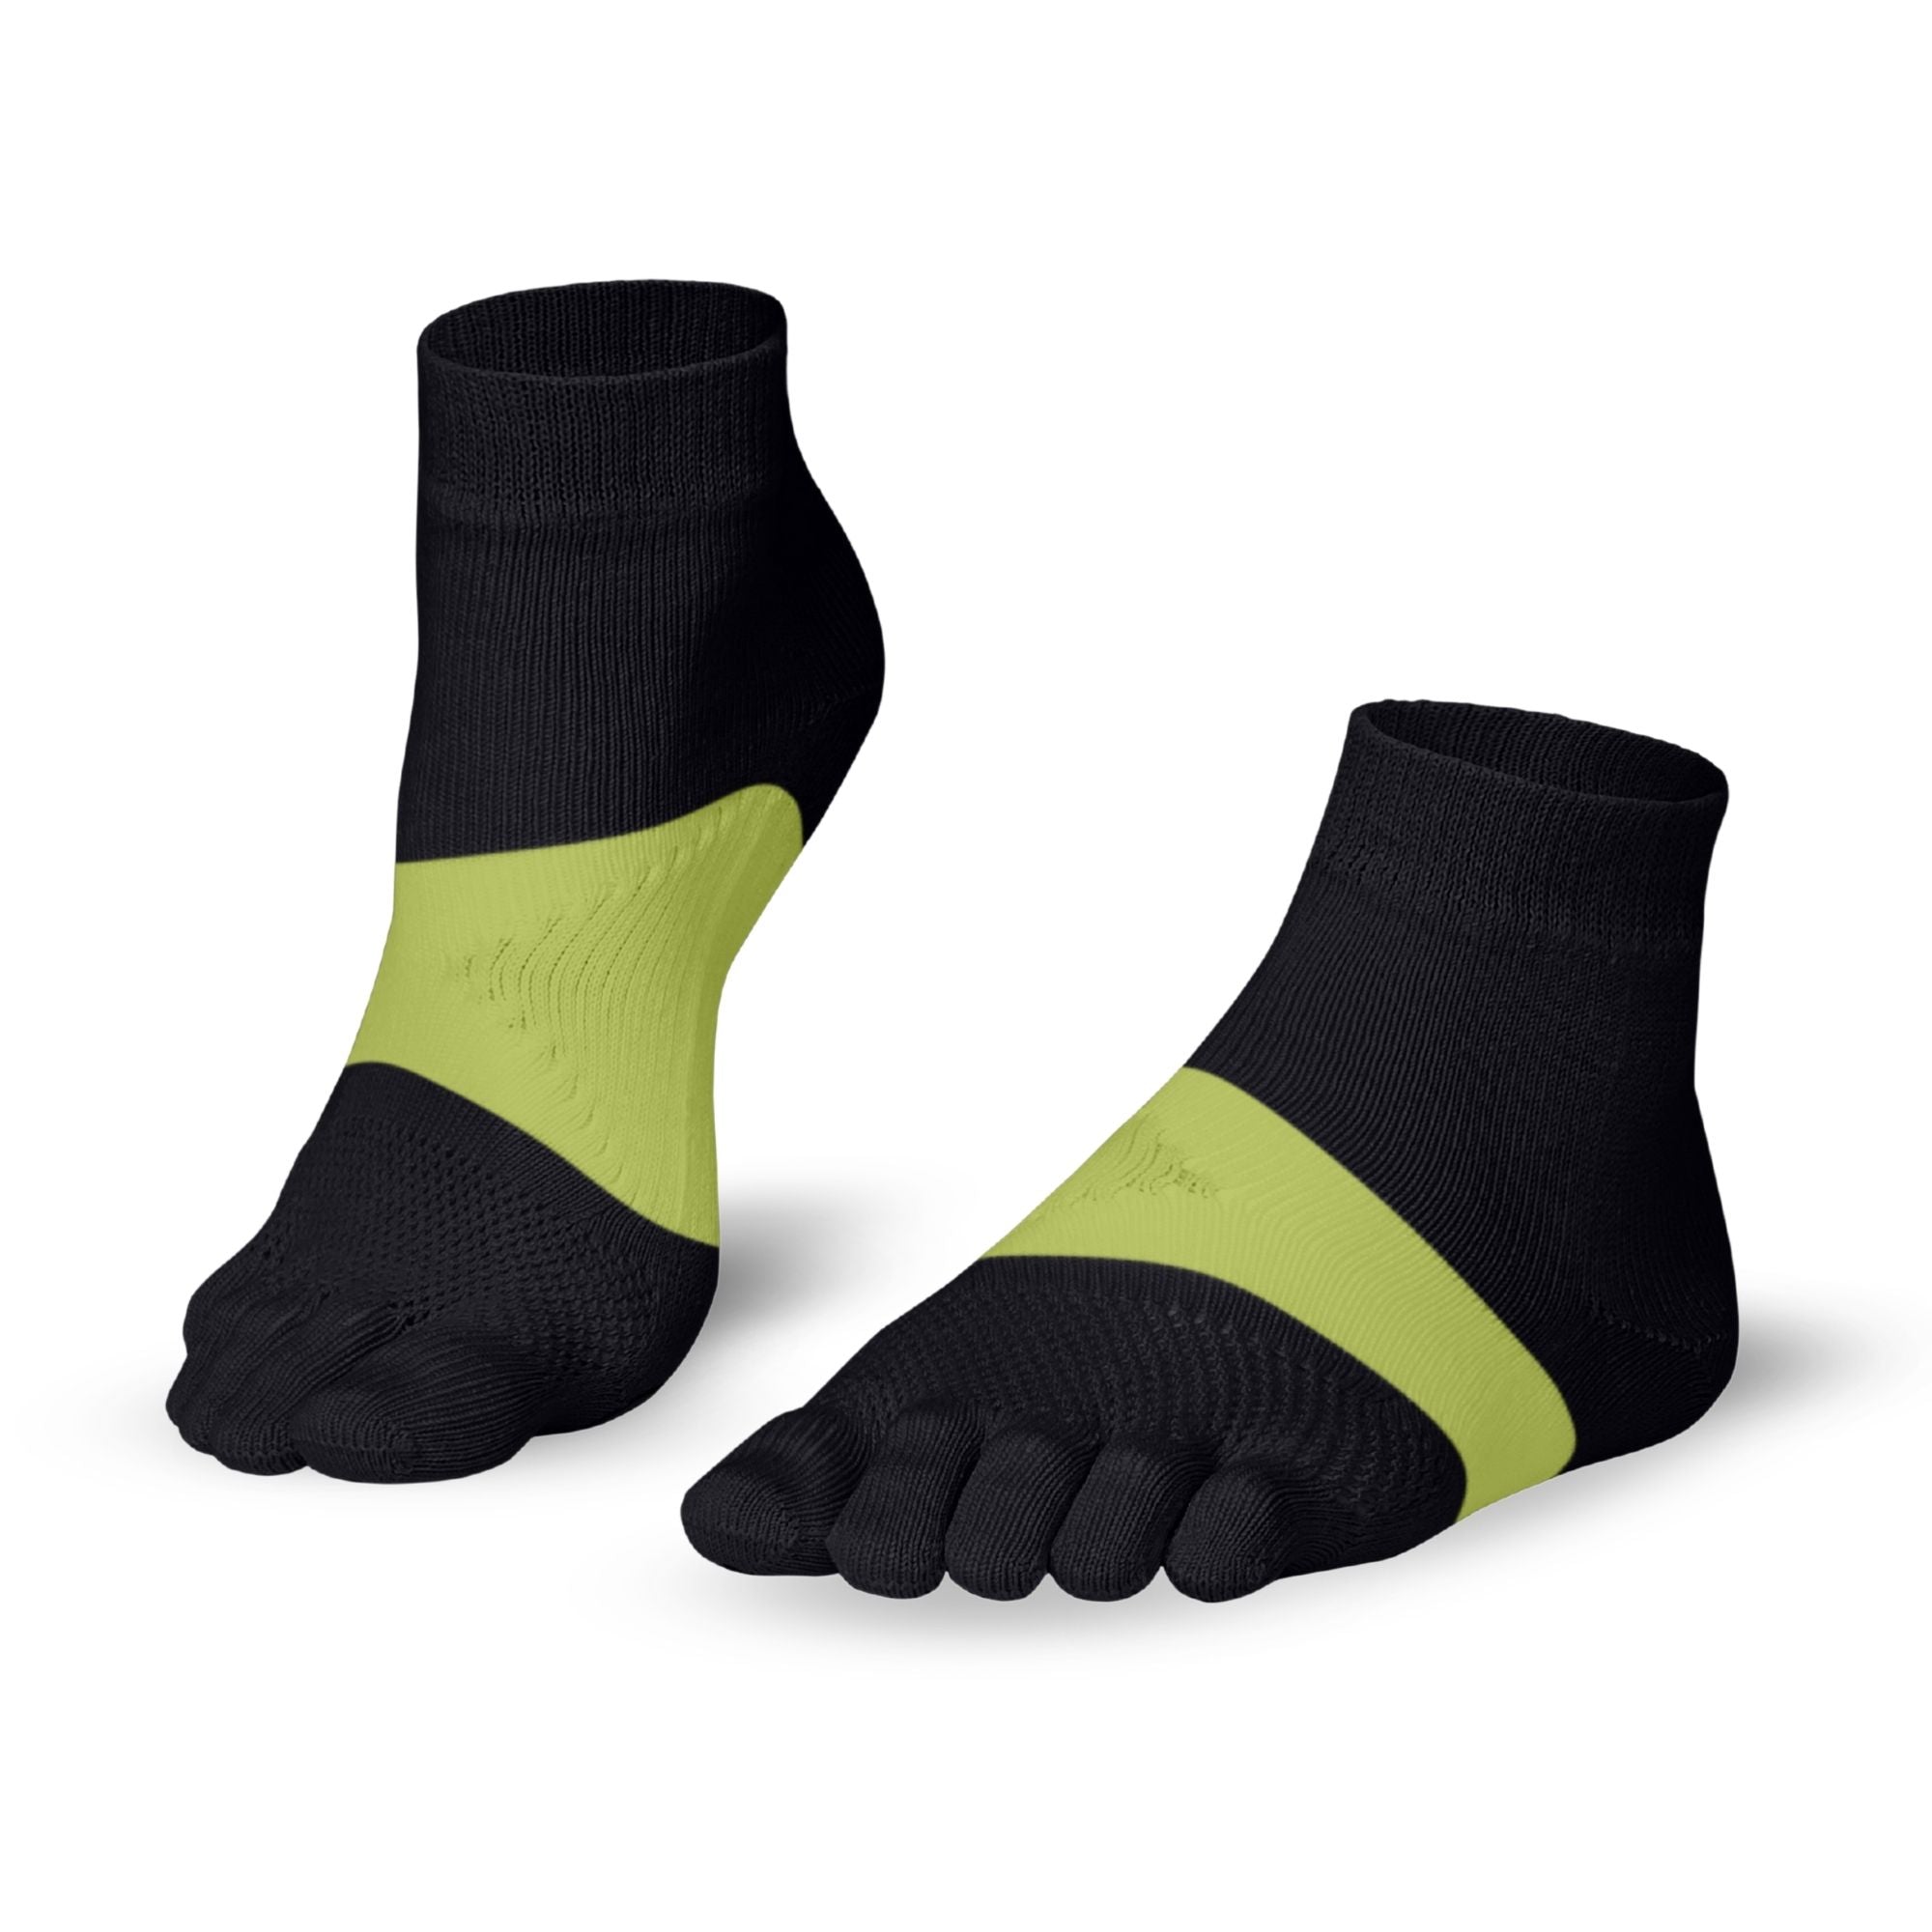 Knitido Calcetines de dedo maratón para deportes y carreras de larga distancia - negro / verde